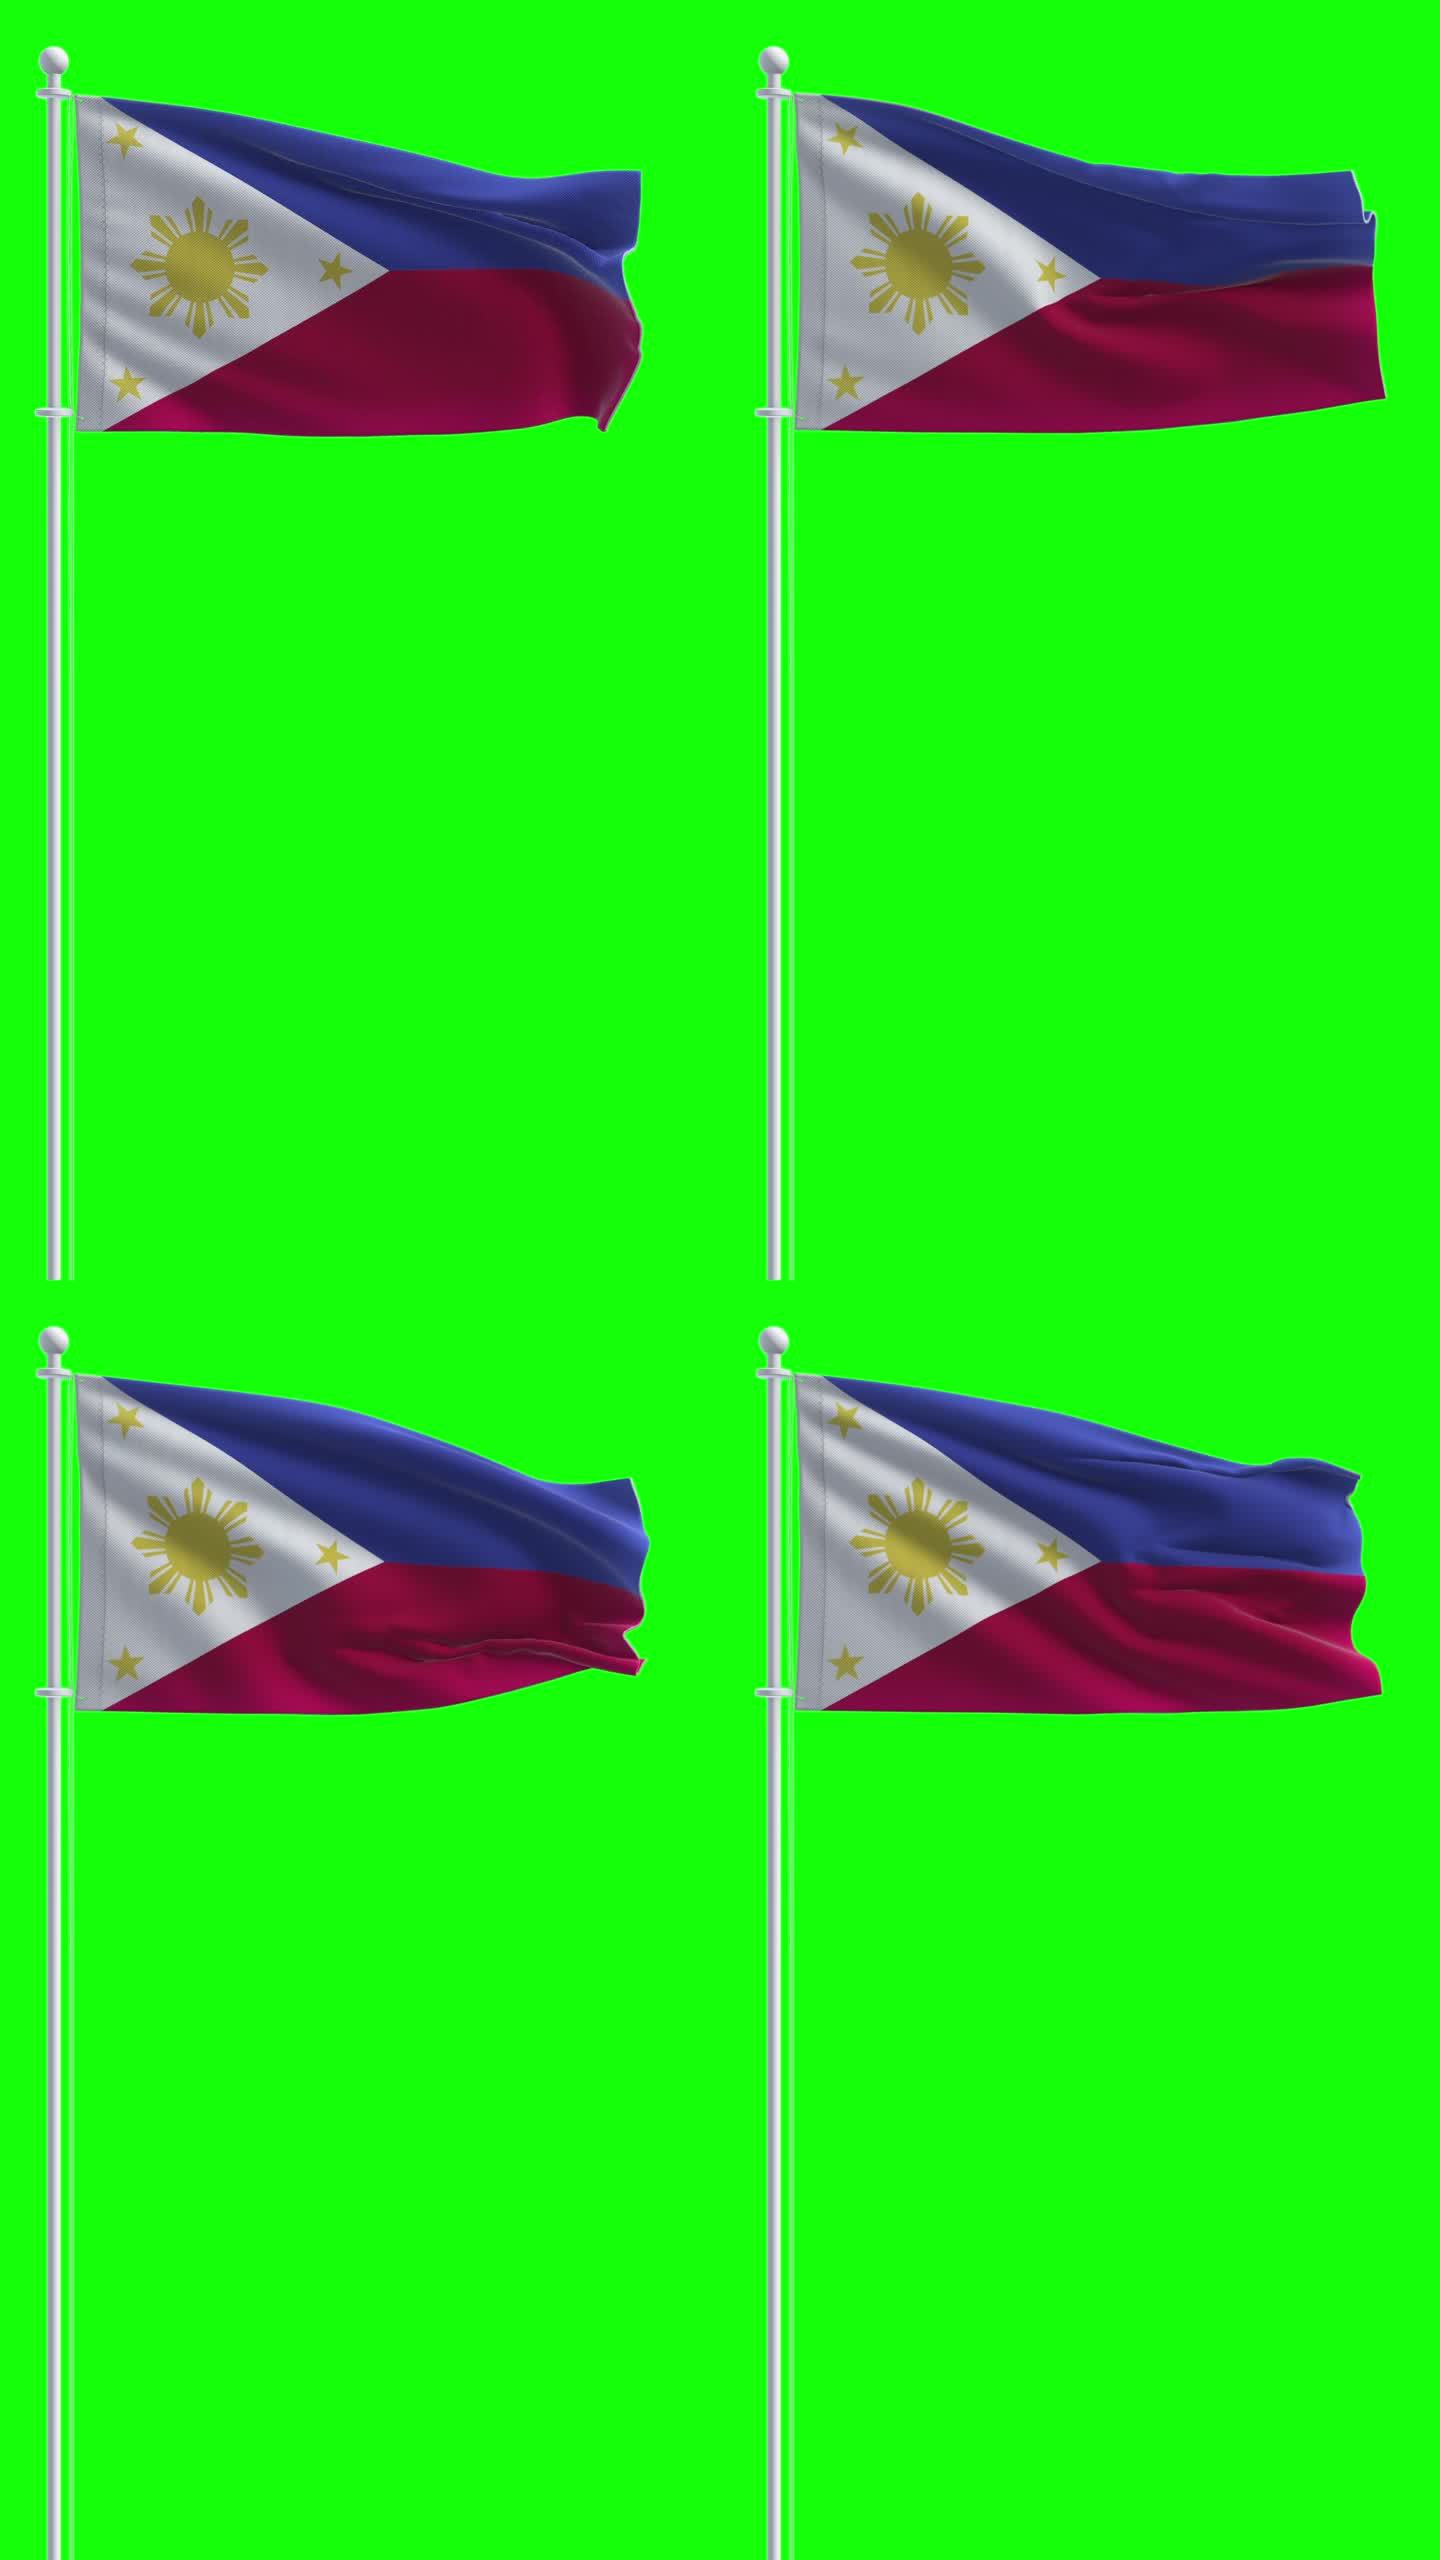 菲律宾国旗在色度键背景